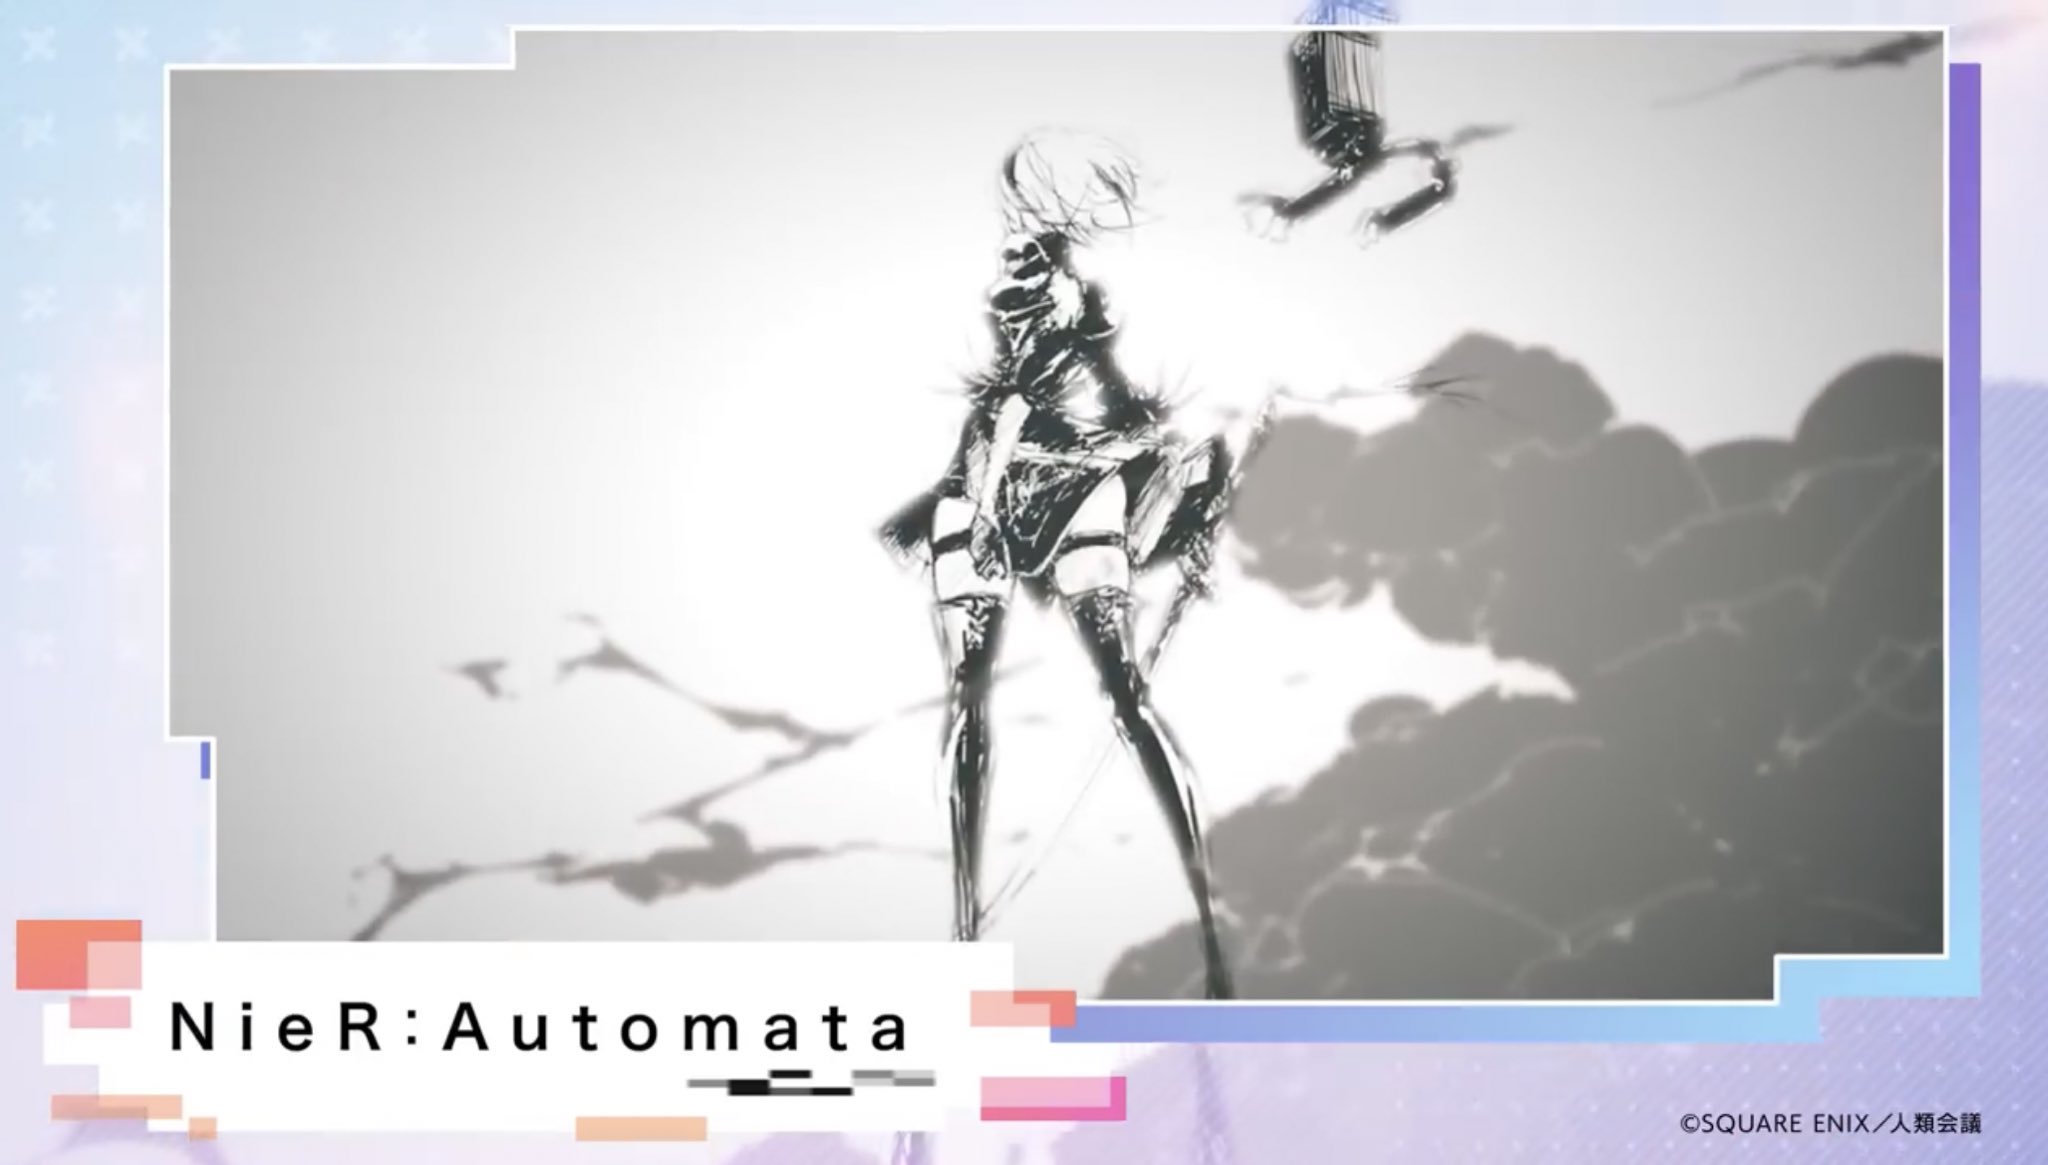 ☆オードリーAudrey☆ on X: News about the upcoming NieR Automata